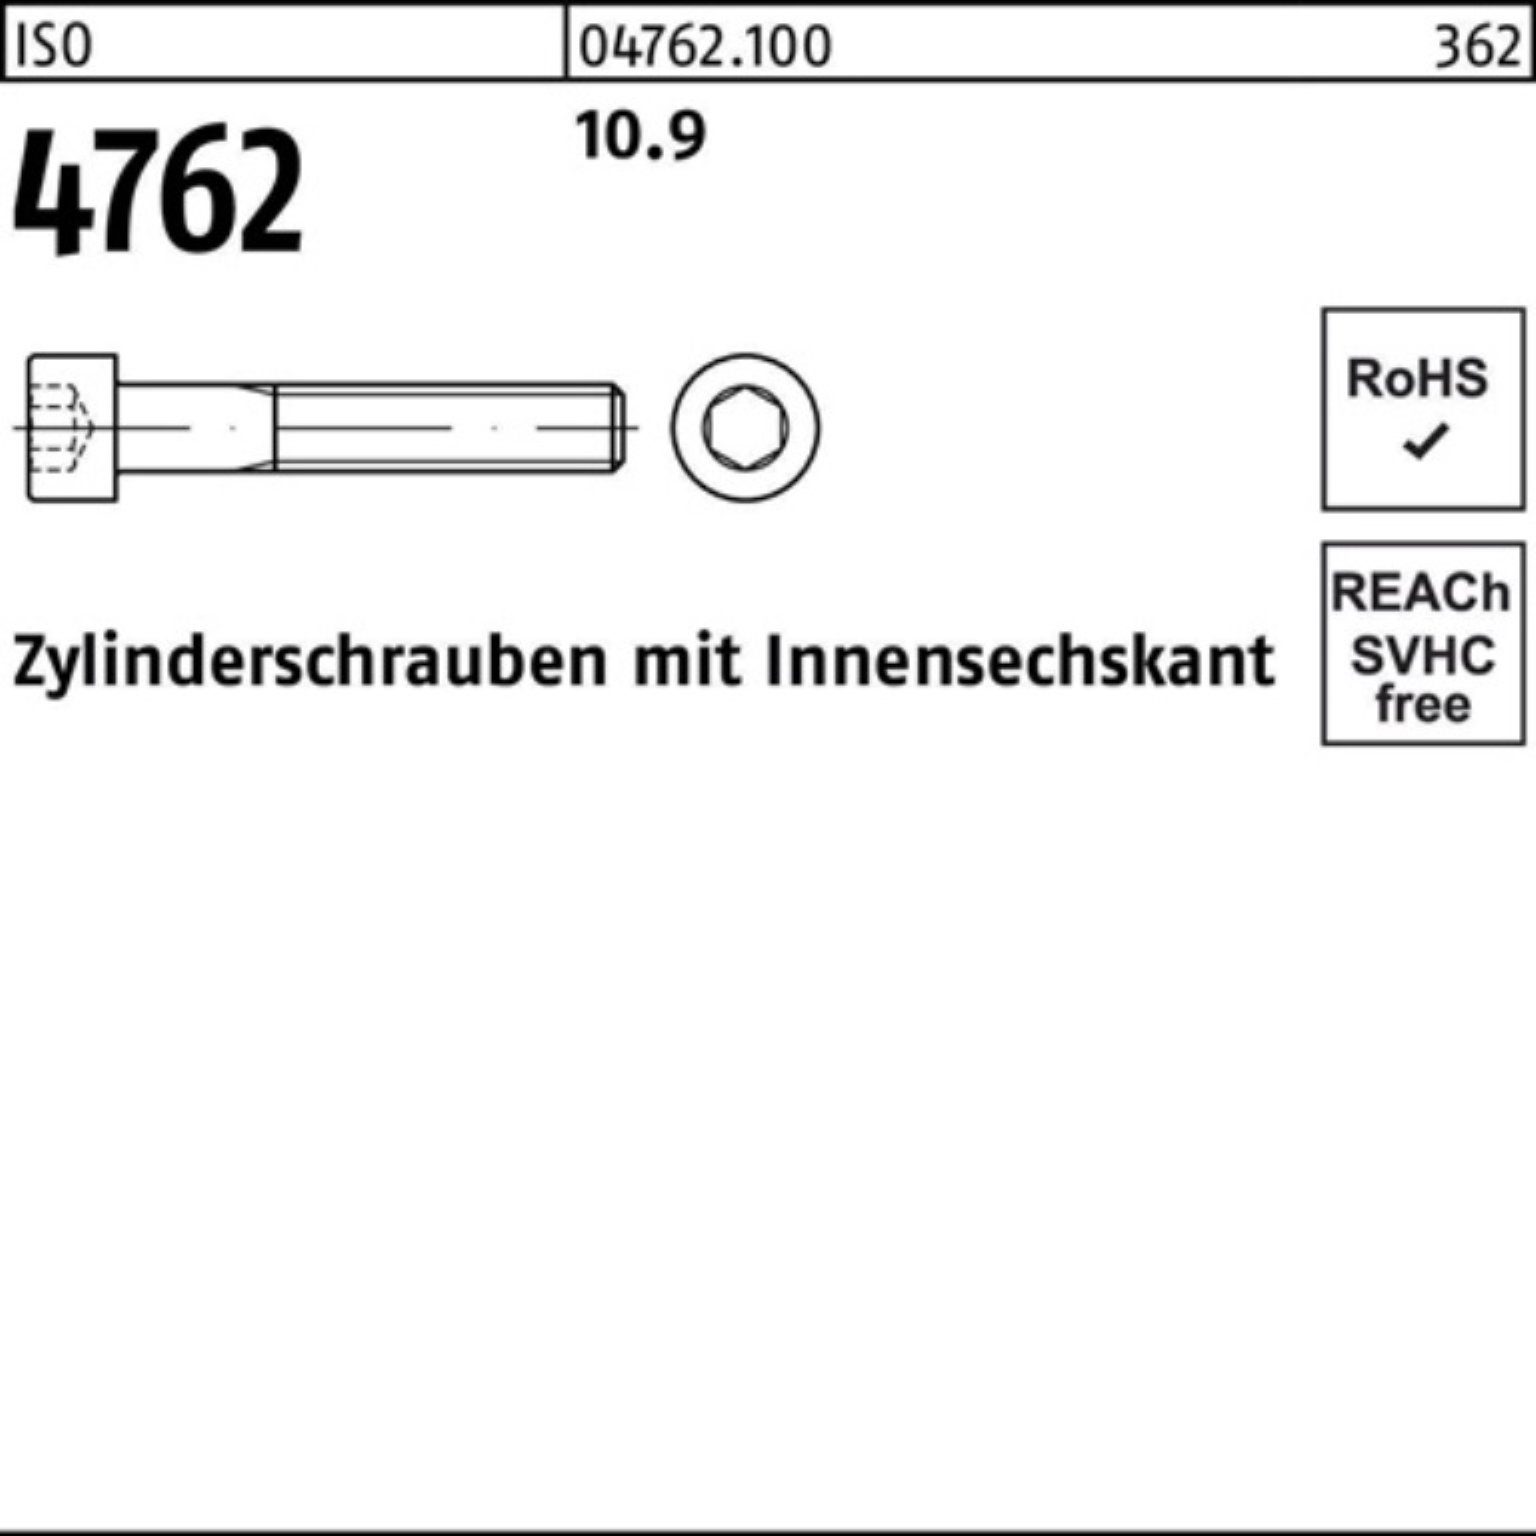 ISO Innen-6kt Reyher 100er Pack 420 Stück Zylinderschraube M30x 1 10.9 4762 Zylinderschraube